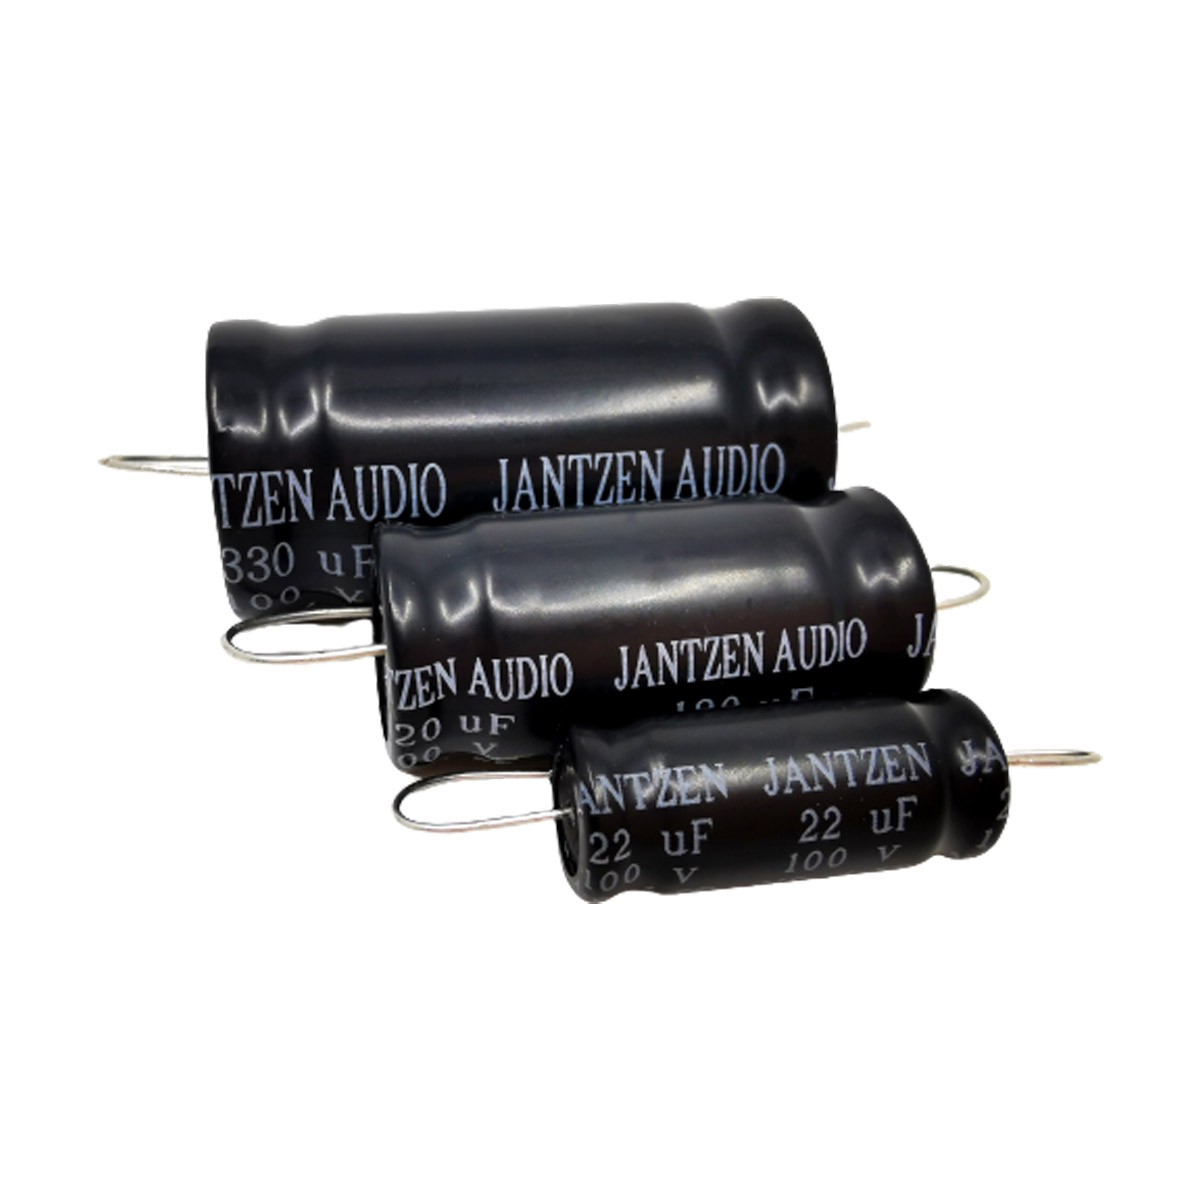 JANTZEN AUDIO ELECAP Condensateur Électrolytique 100V 56µF 5%